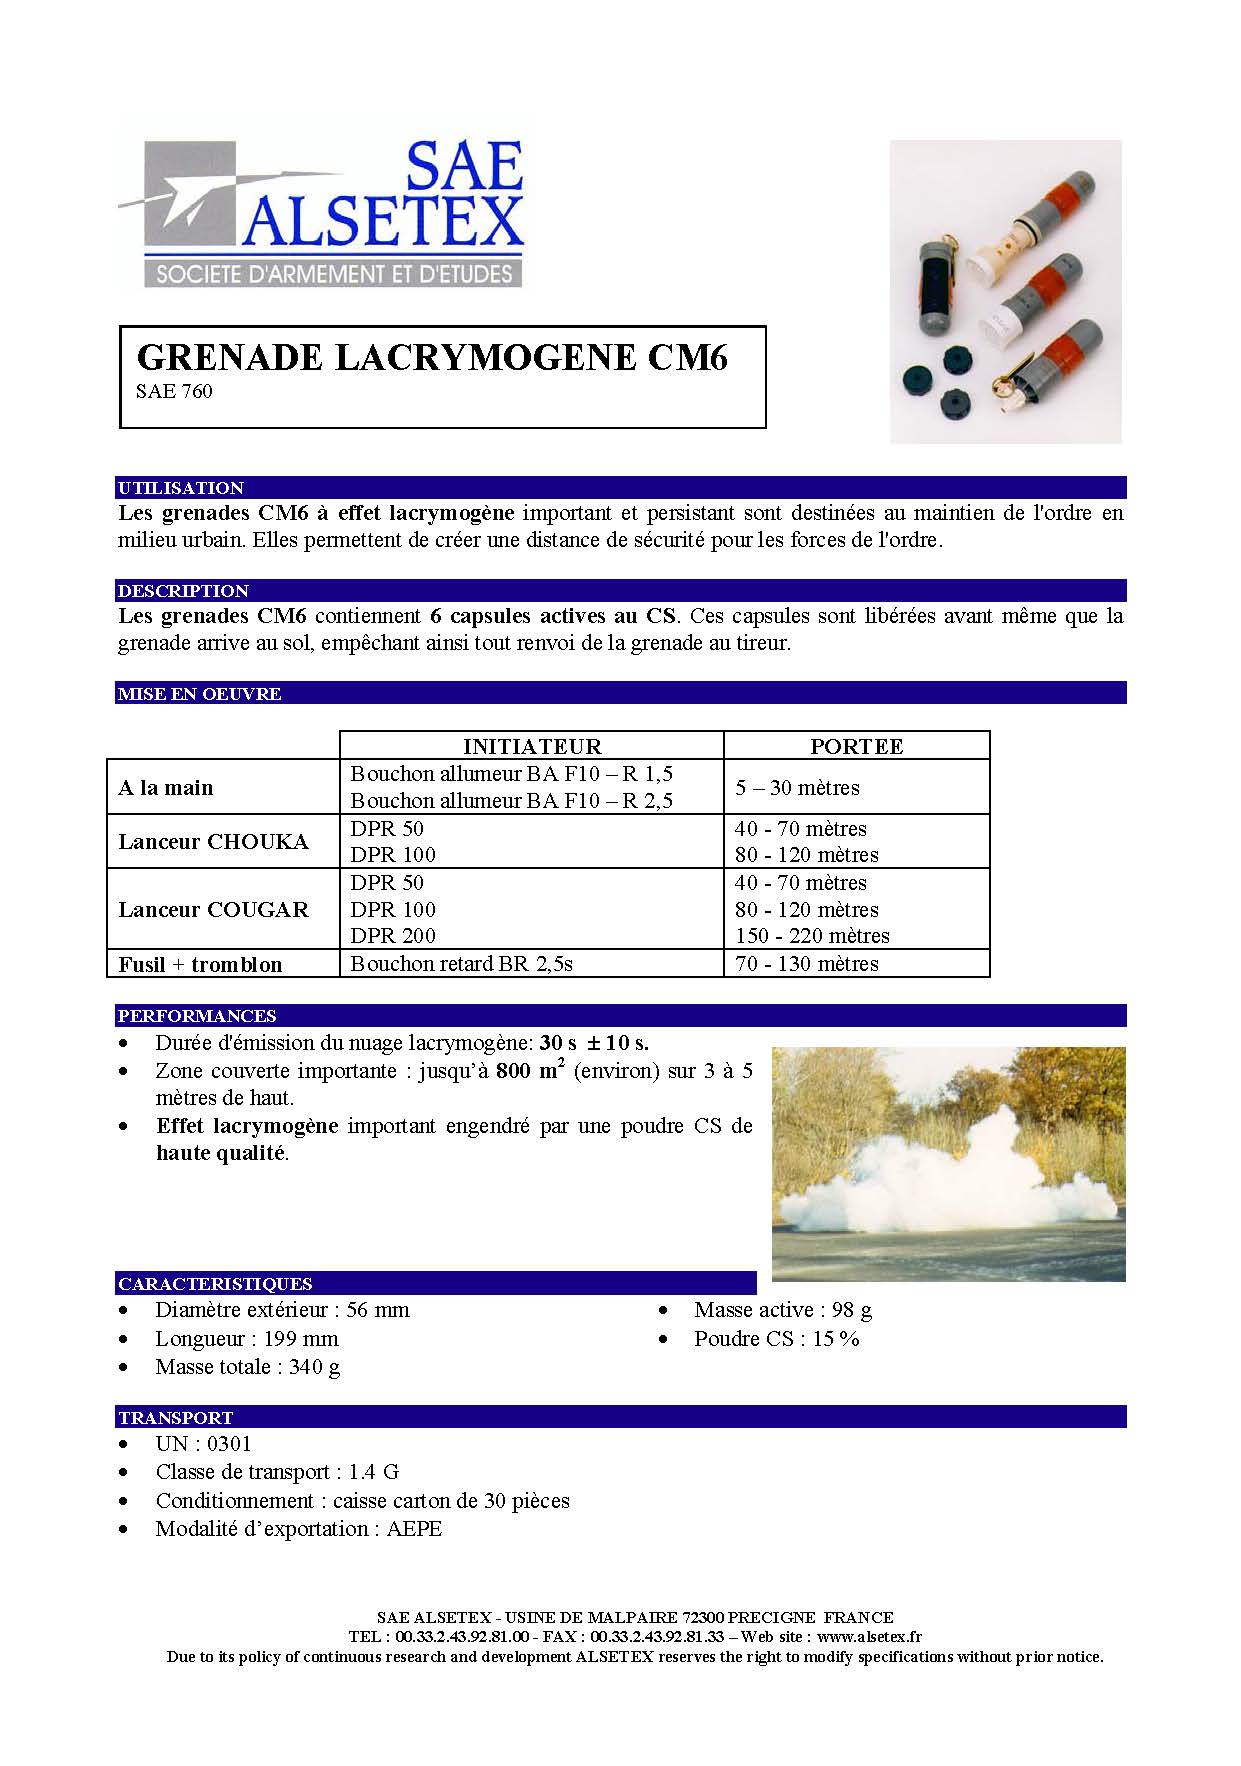 Grenades Lacrymogènes CM6